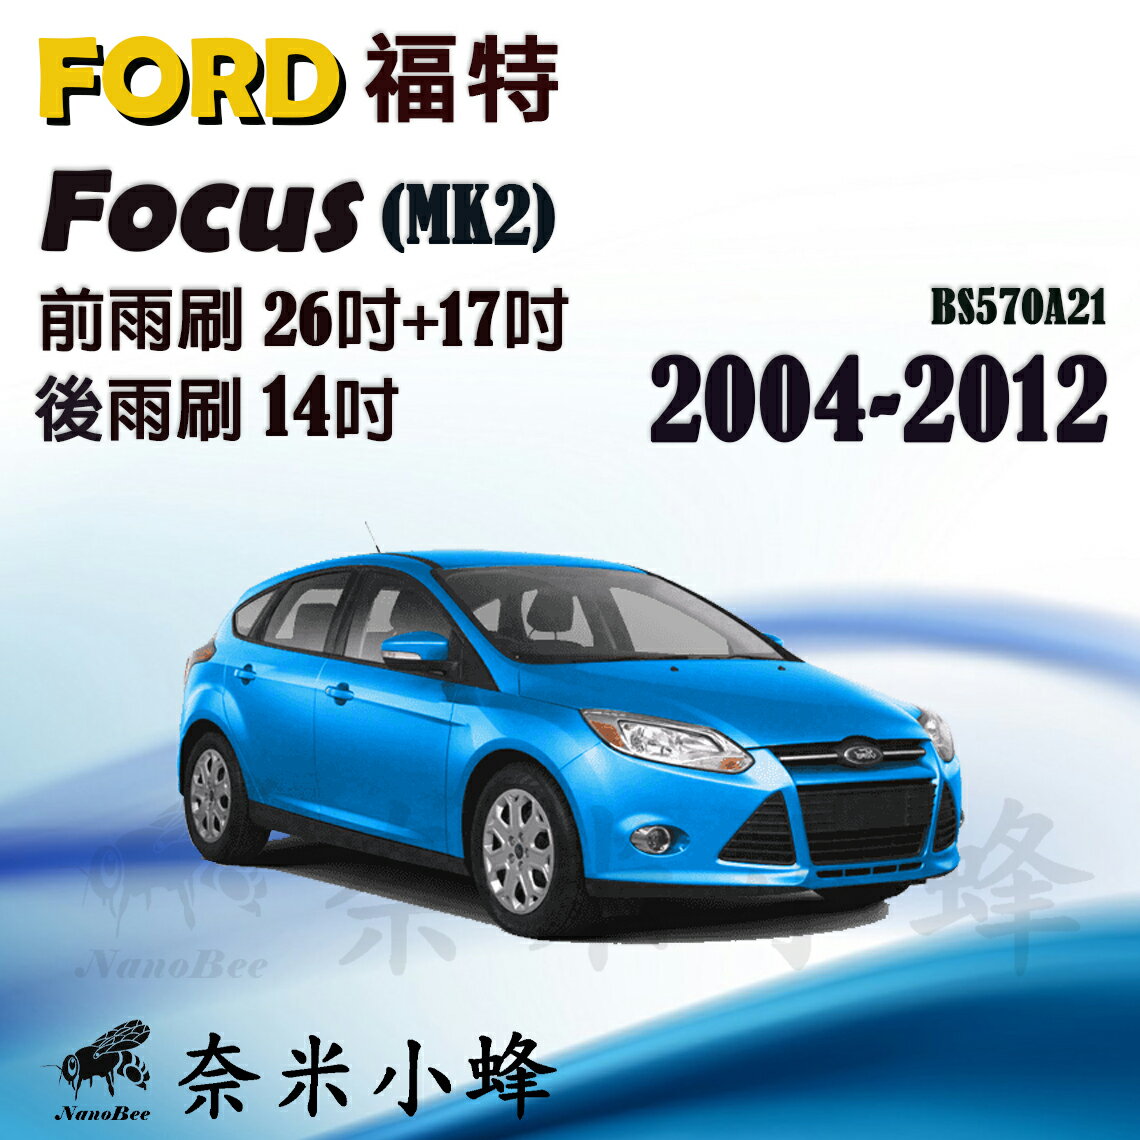 【奈米小蜂】FORD福特 Focus 2004-2012(MK2)雨刷 FOCUS後雨刷 矽膠雨刷 矽膠鍍膜 軟骨雨刷